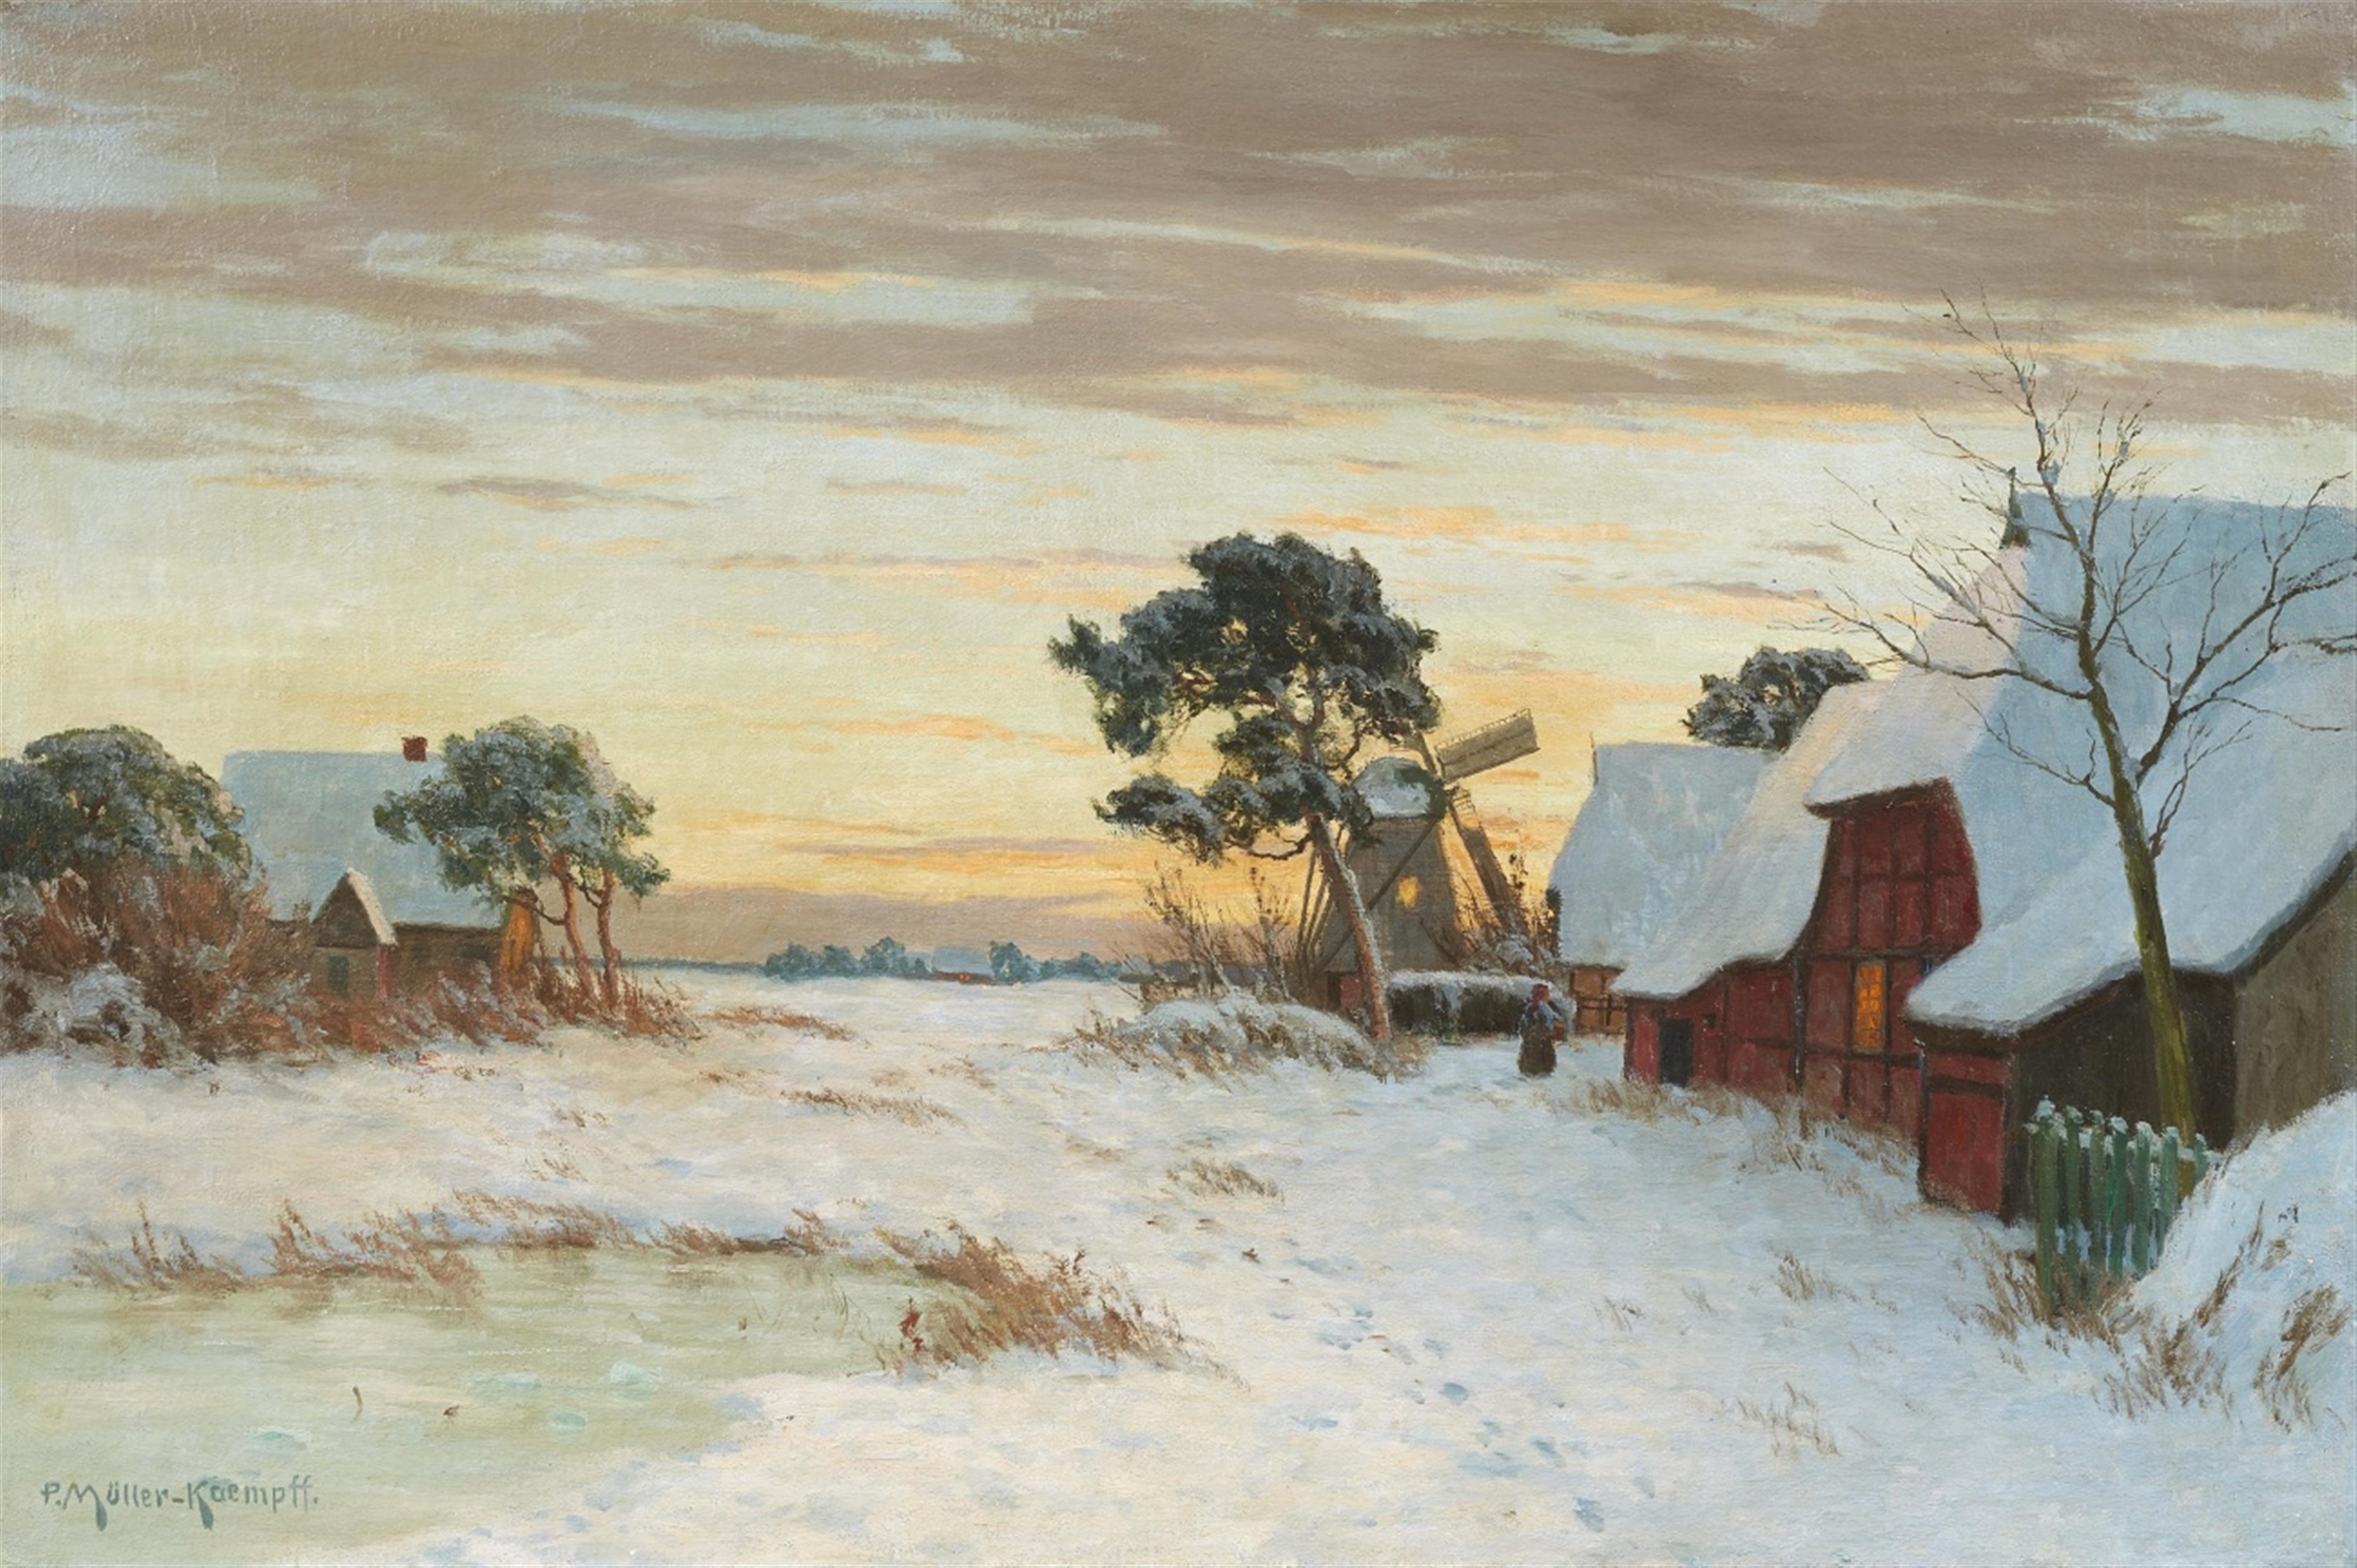 Paul Müller-Kaempff - Winterlandschaft mit Bauernhäusern und Windmühle in Ahrenshoop - image-1